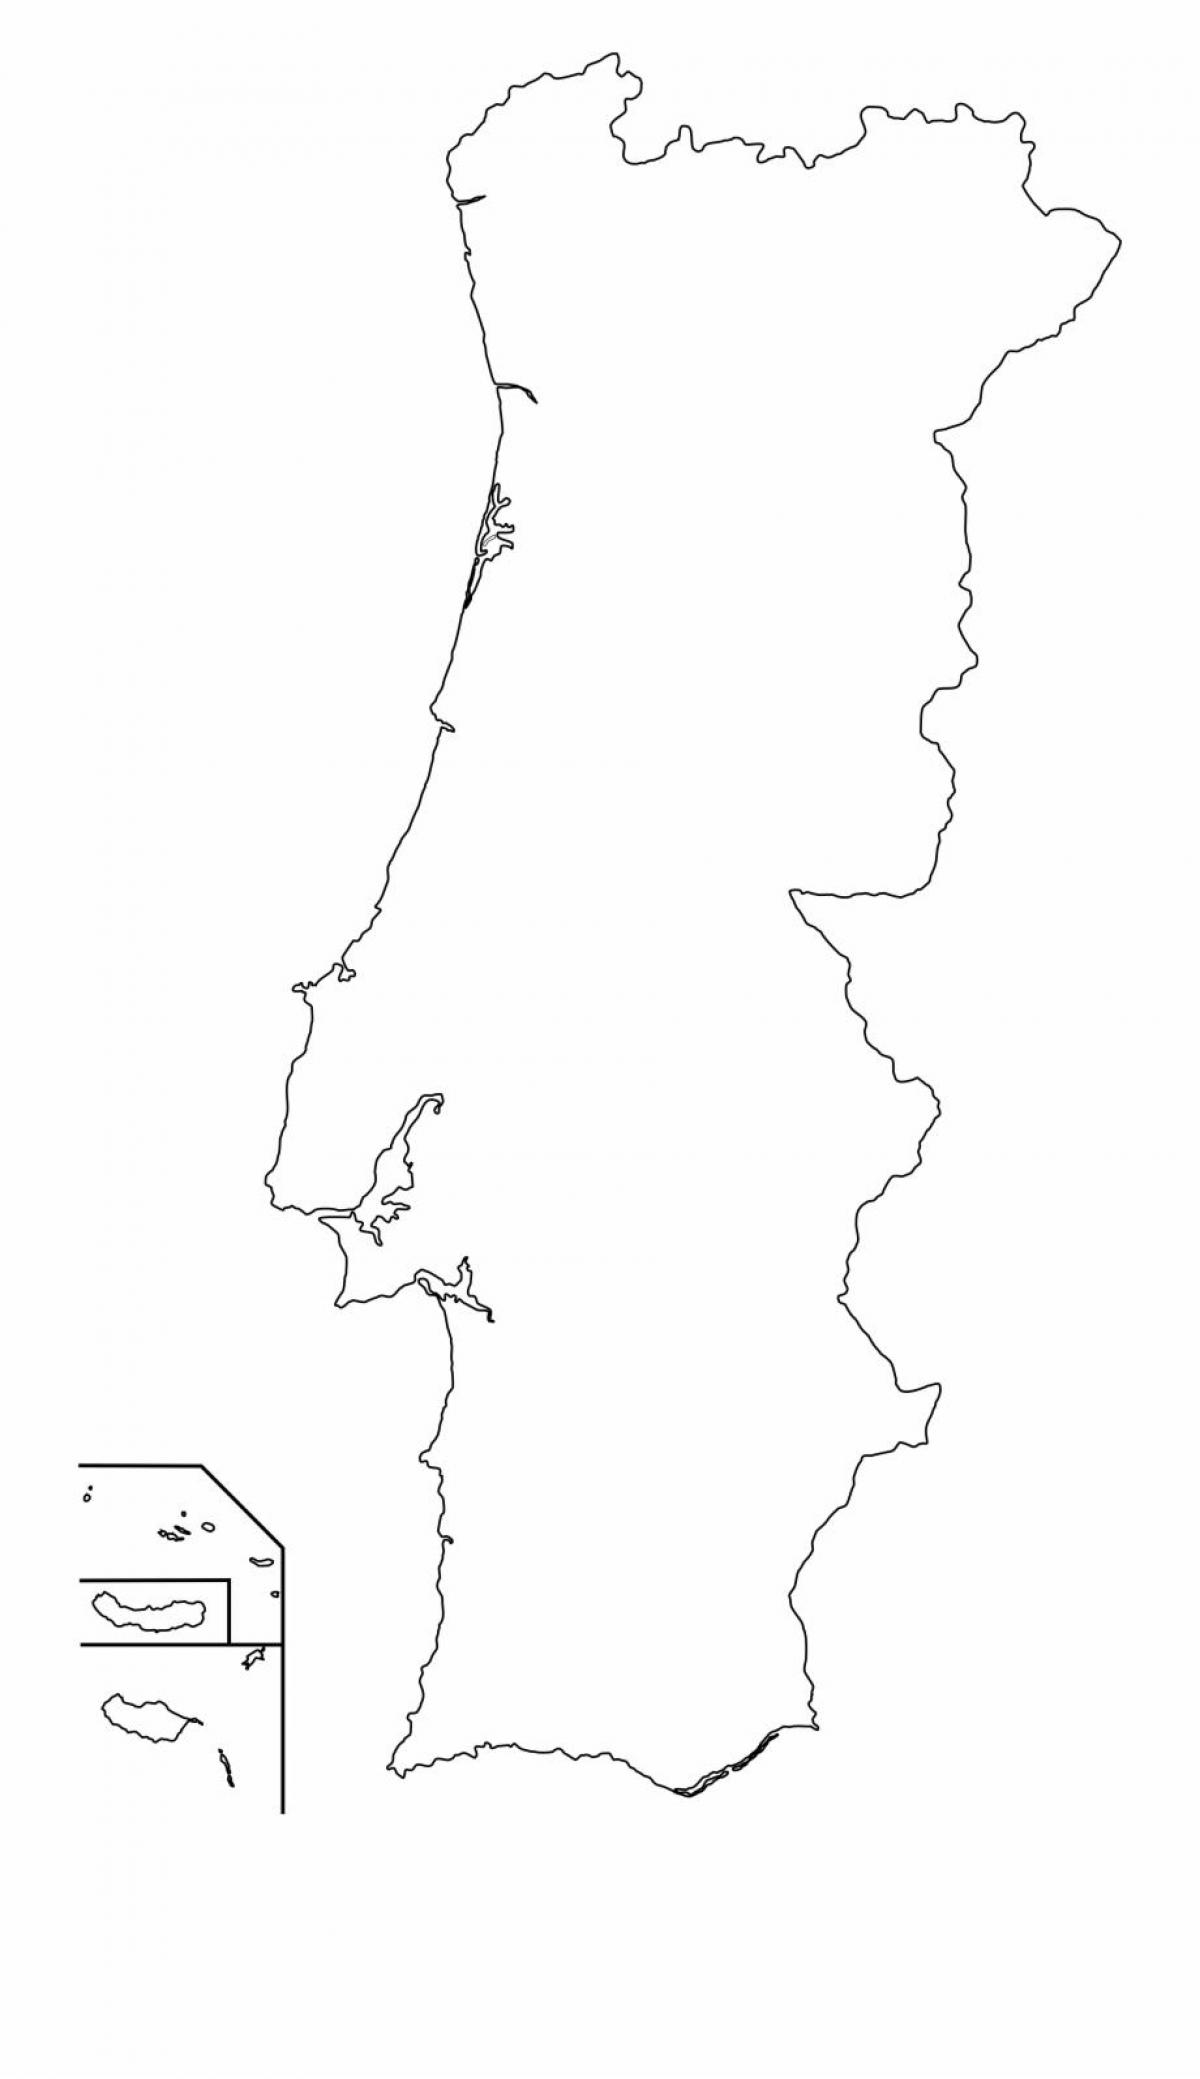 Portugal contours map